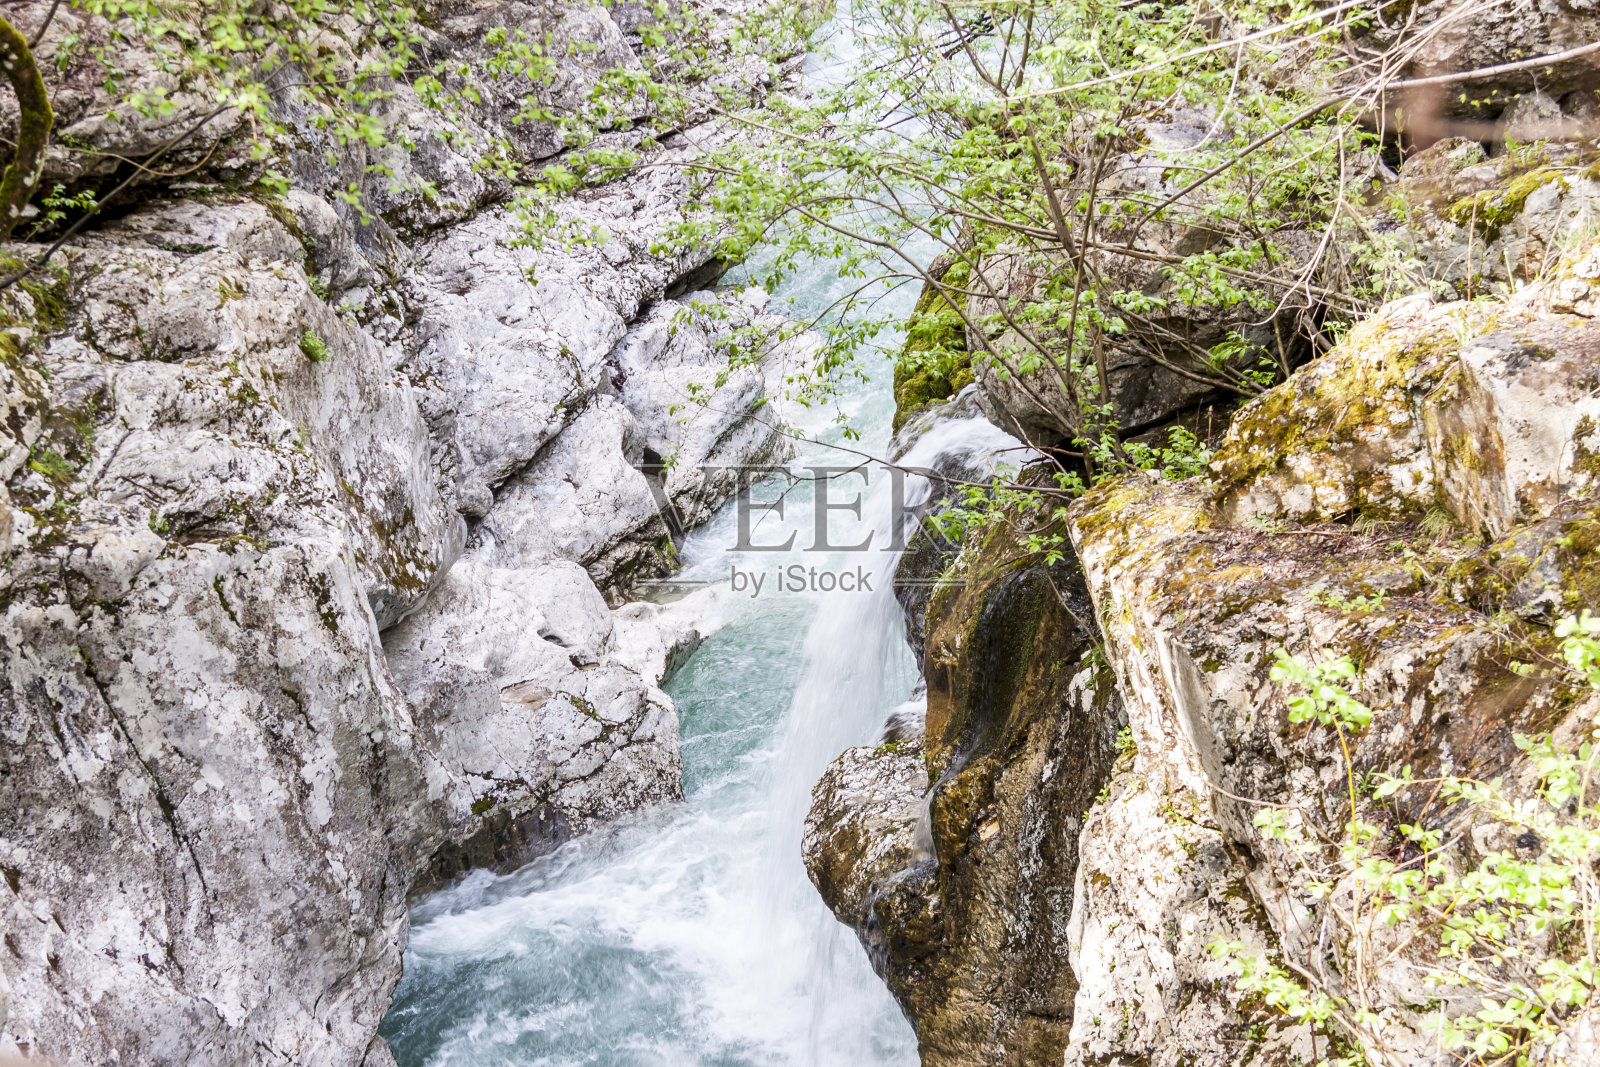 韦利卡科里塔是一条索斯河 - 斯洛文尼亚。照片摄影图片